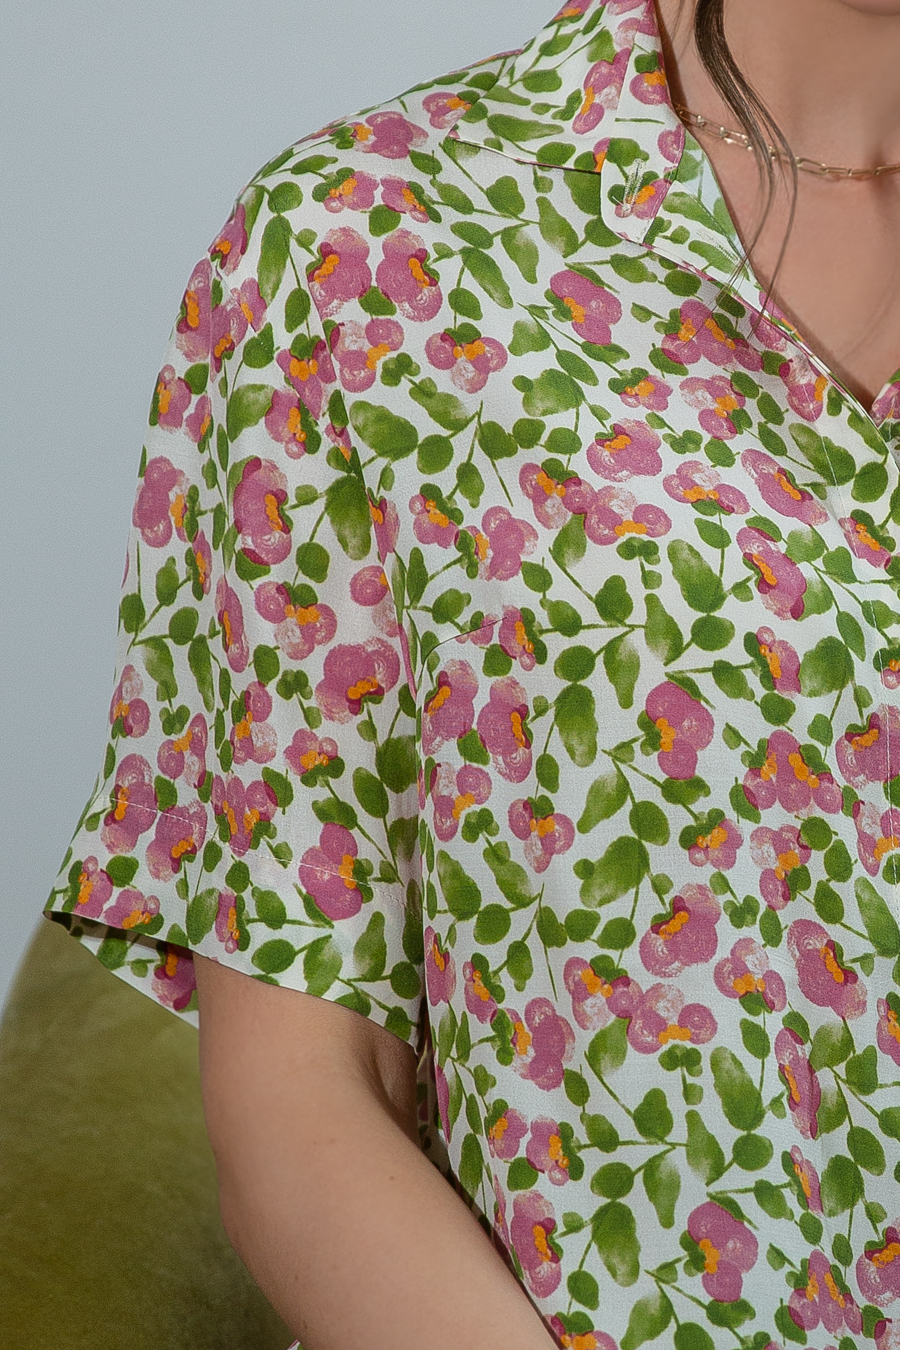 Кларити.1 блузка свободного кроя с супатной застежкой с цветочным принтом Ритини